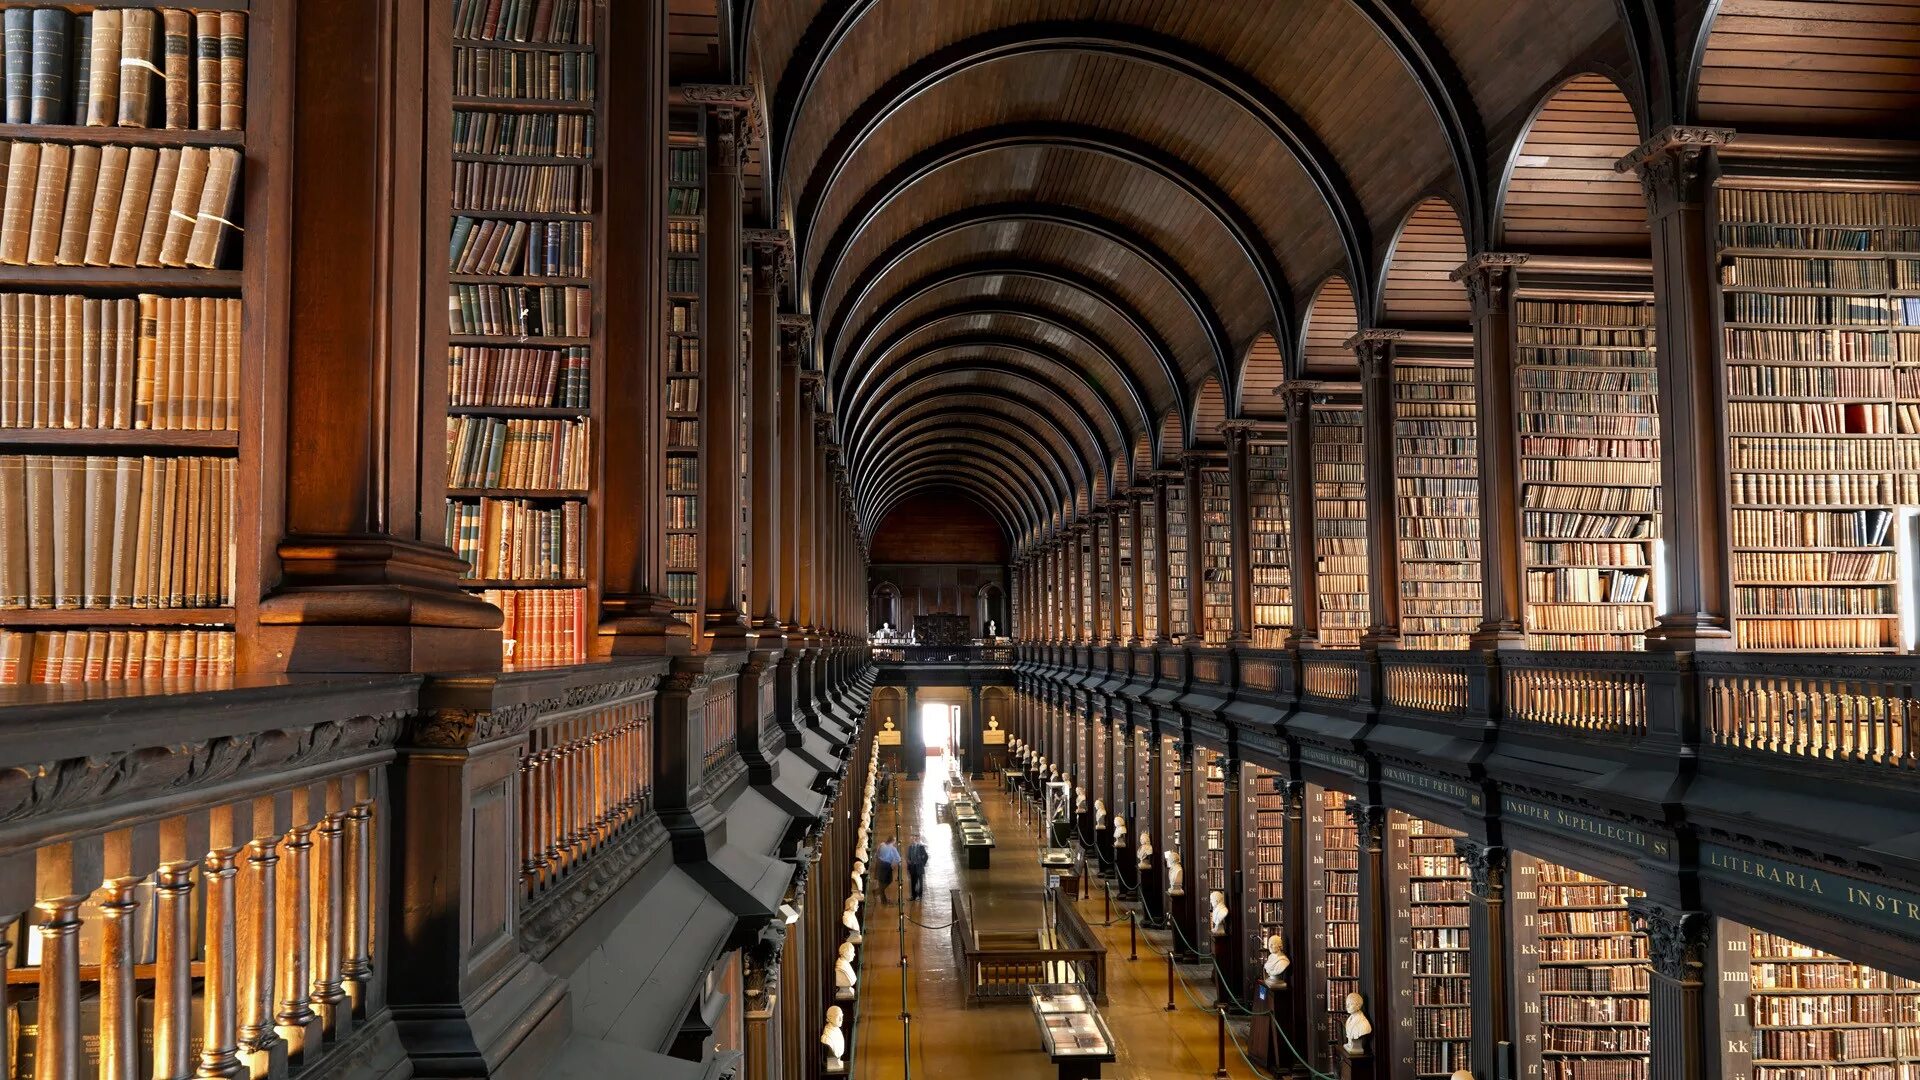 Extension library. Библиотека Тринити-колледжа в Дублине. Библиотека Тринити-колледжа, Дублин, Ирландия. Тринити-колледж в Дублине, Ирландия. Библиотека Тринити-колледжа в Кембридже.